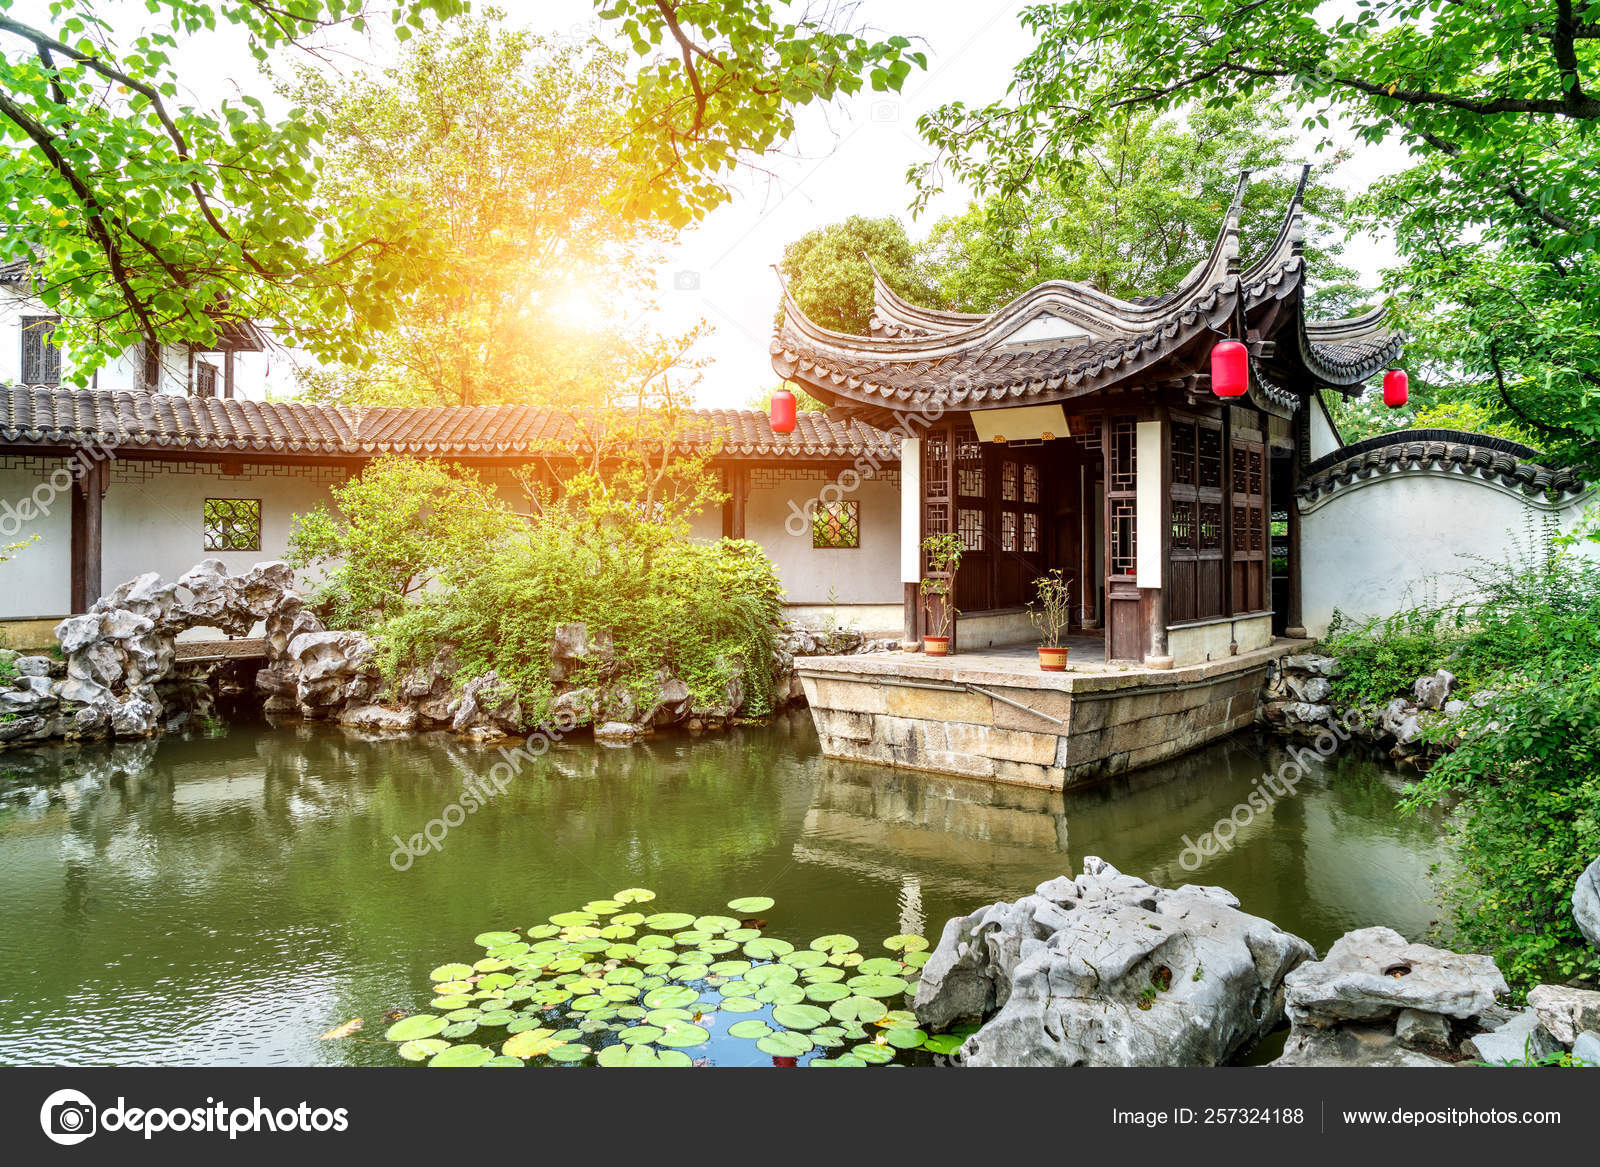 Cubic Fun 3D Puzzle Jardins Classiques de Suzhou Chine Classical Gardens of Suzhou China 